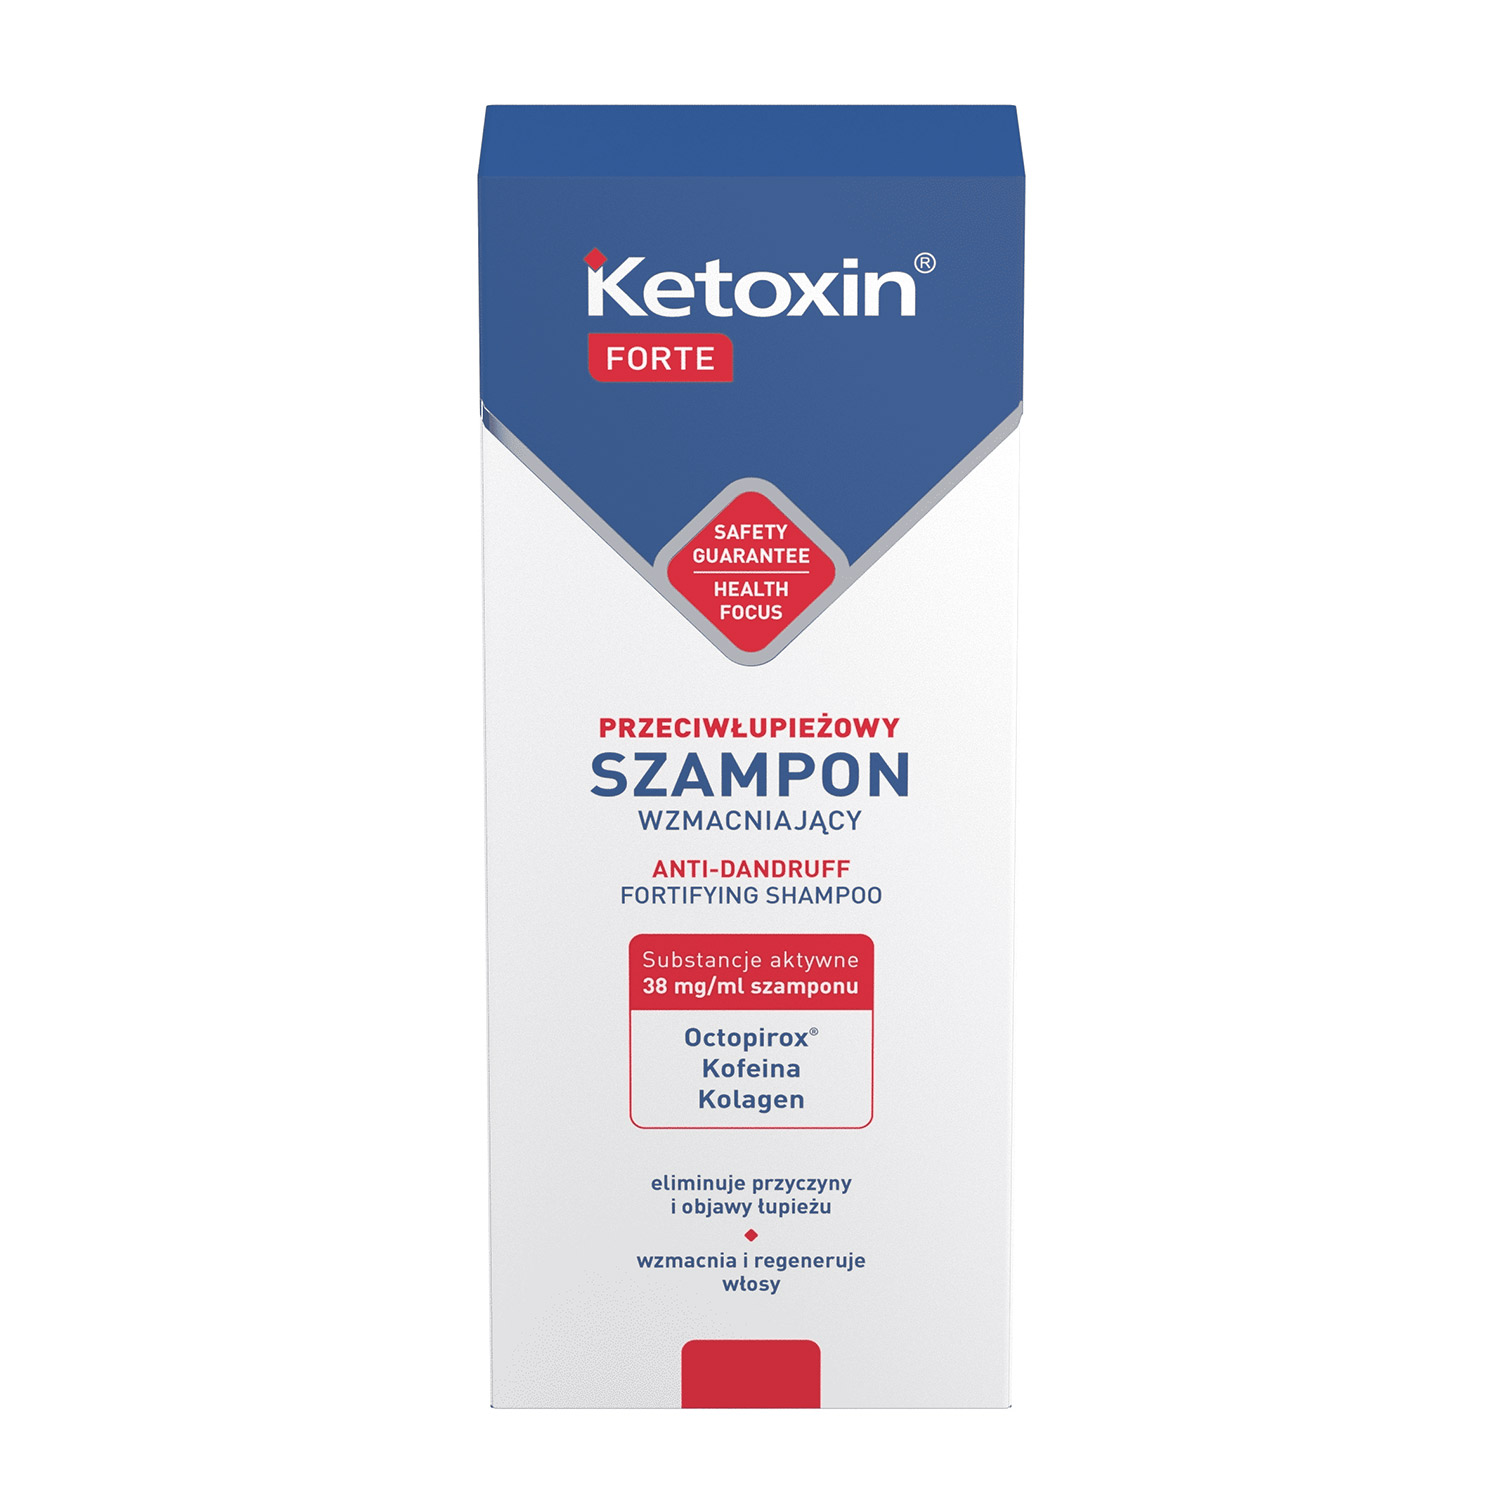 lbiotica ketoxin med hipoalergiczny szampon przeciwłupieżowy opinie